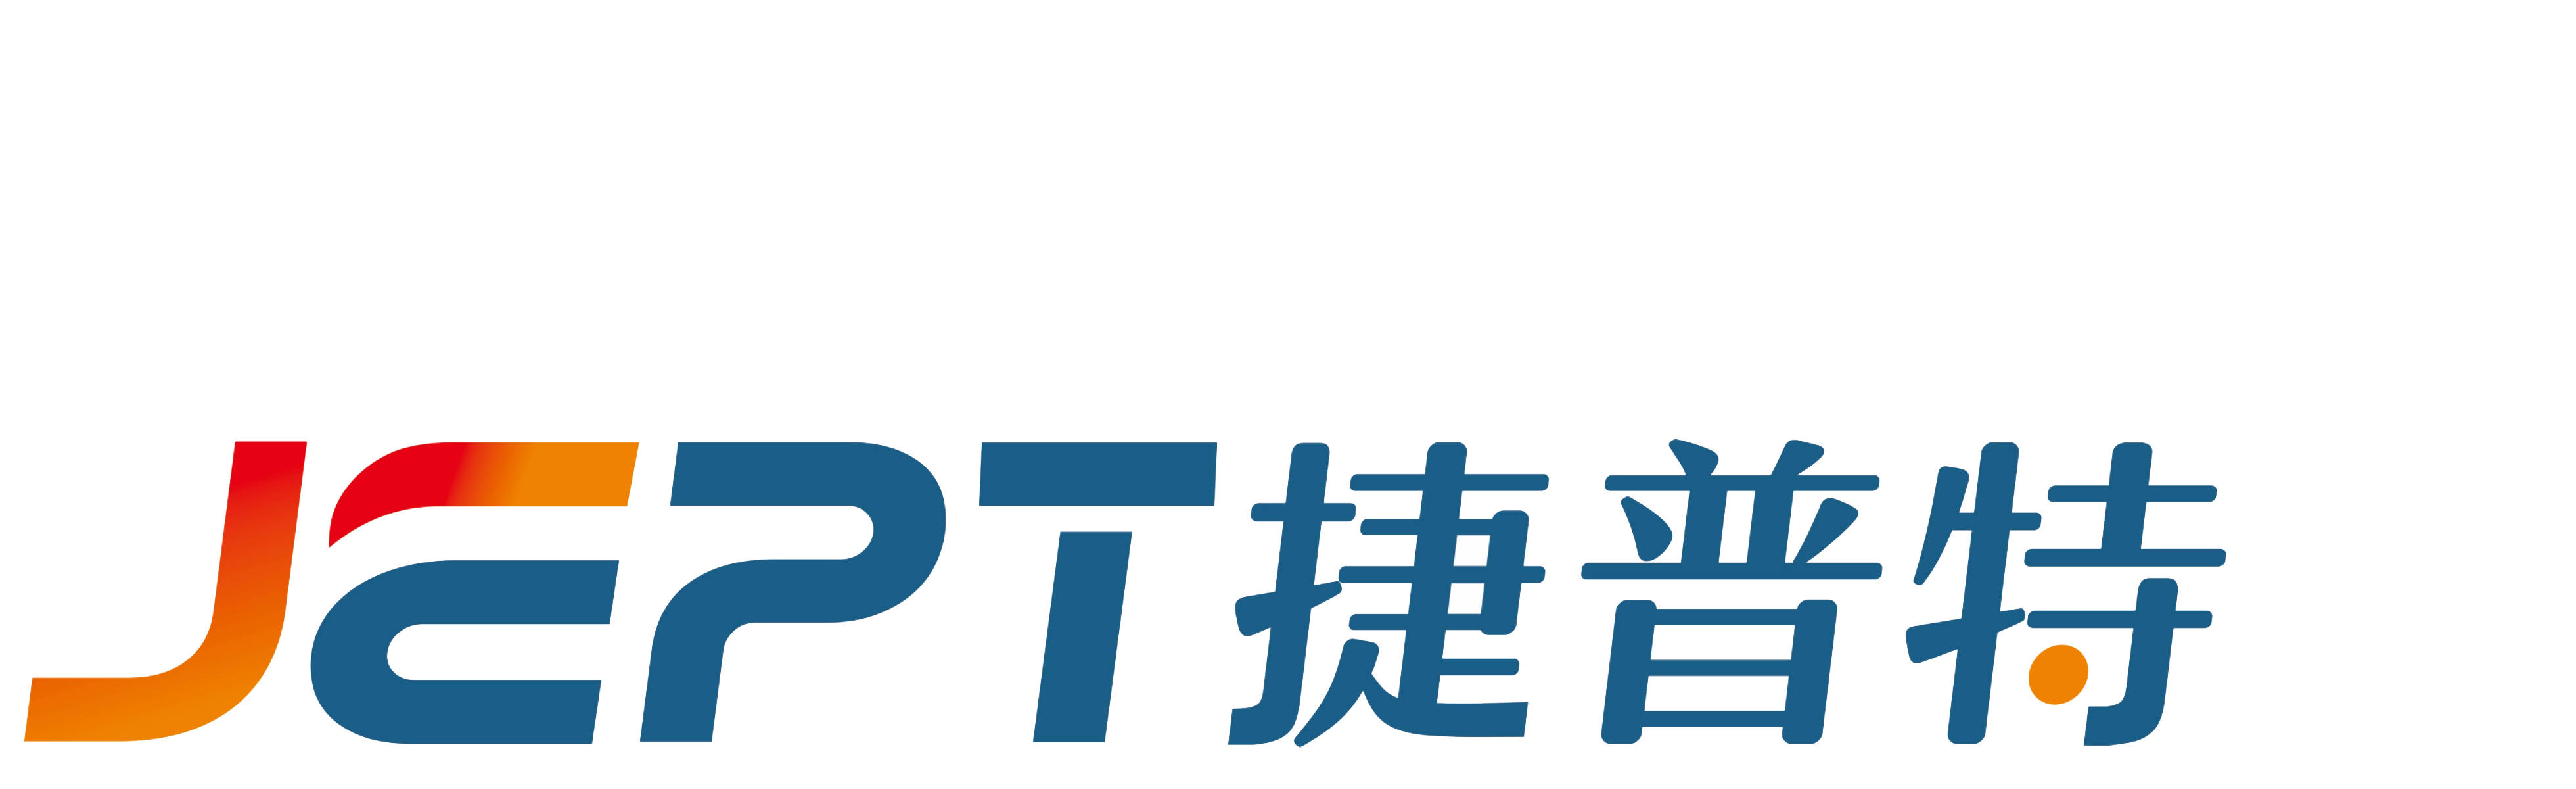 Logo - JPET